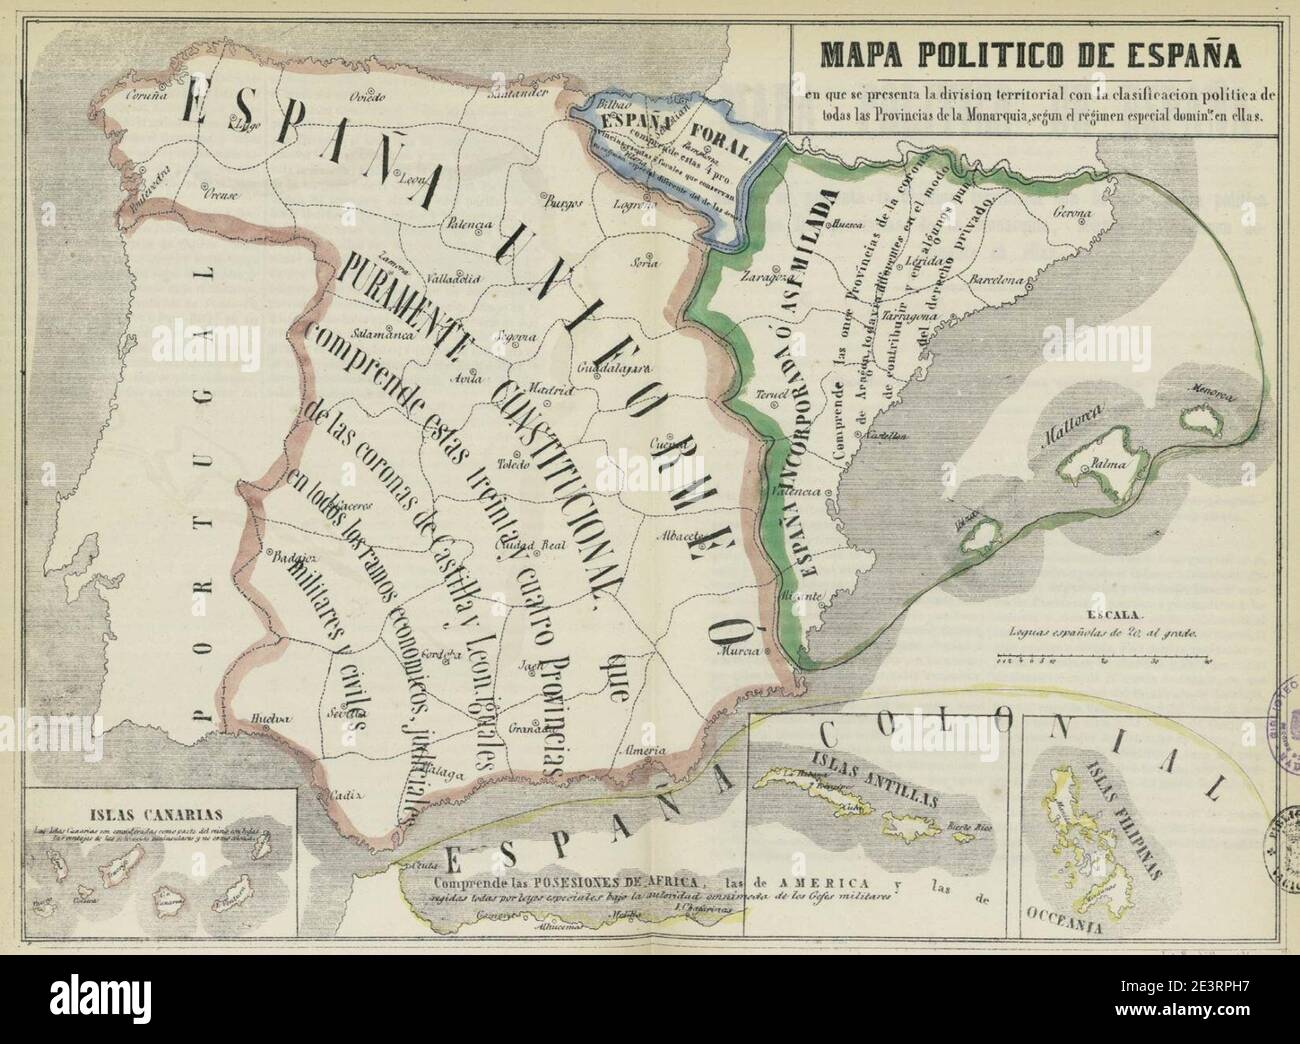 Mapa político de España, 1850. Stock Photo